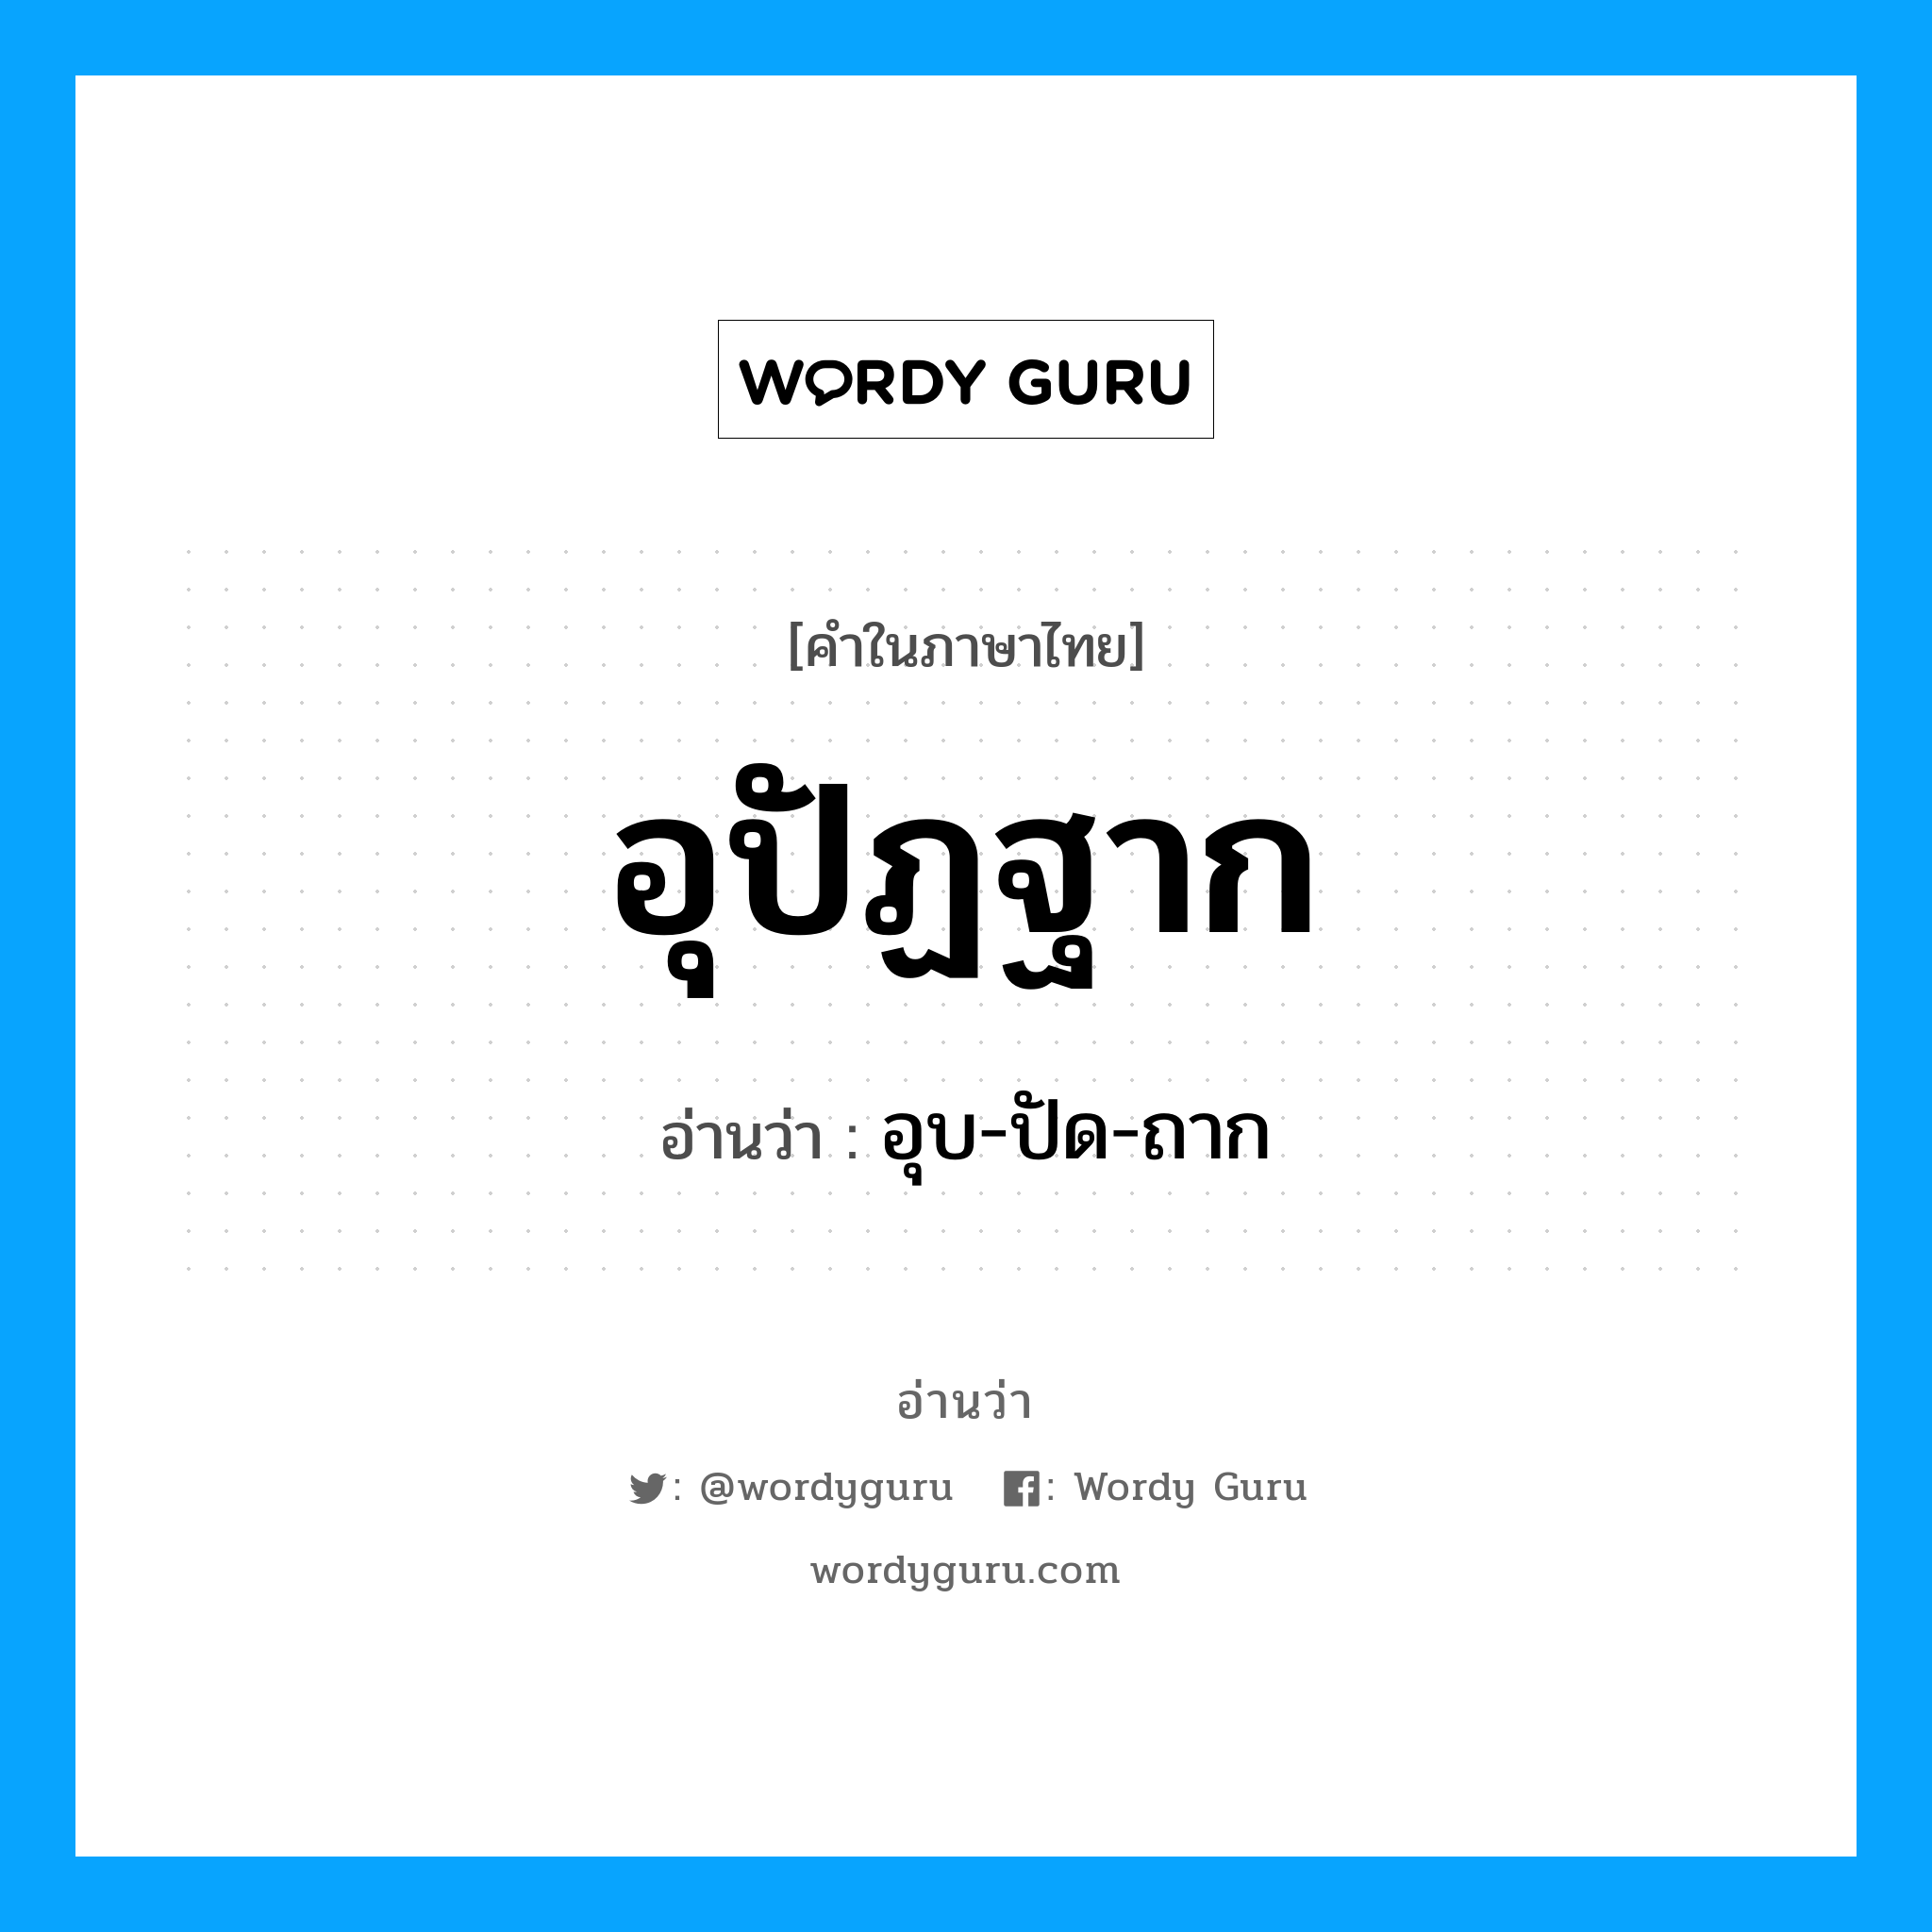 อุบ-ปัด-ถาก เป็นคำอ่านของคำไหน?, คำในภาษาไทย อุบ-ปัด-ถาก อ่านว่า อุปัฏฐาก